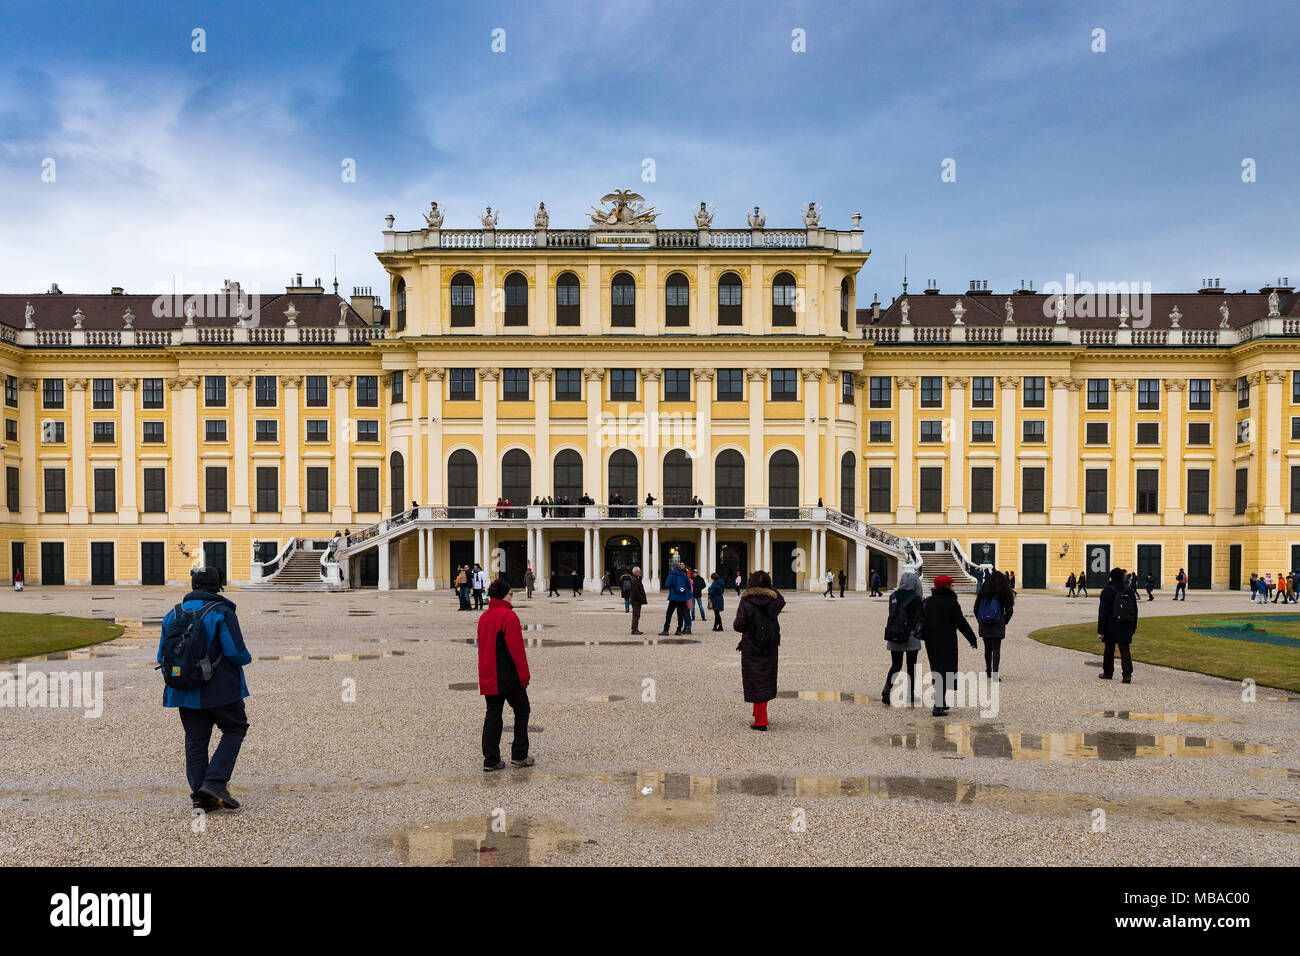 Il parco giardino di Palazzo Shonbrunn (Wien) nella giornata piovosa con piccole pozze e ai grandi gruppi di turisti a piedi attorno a Foto Stock